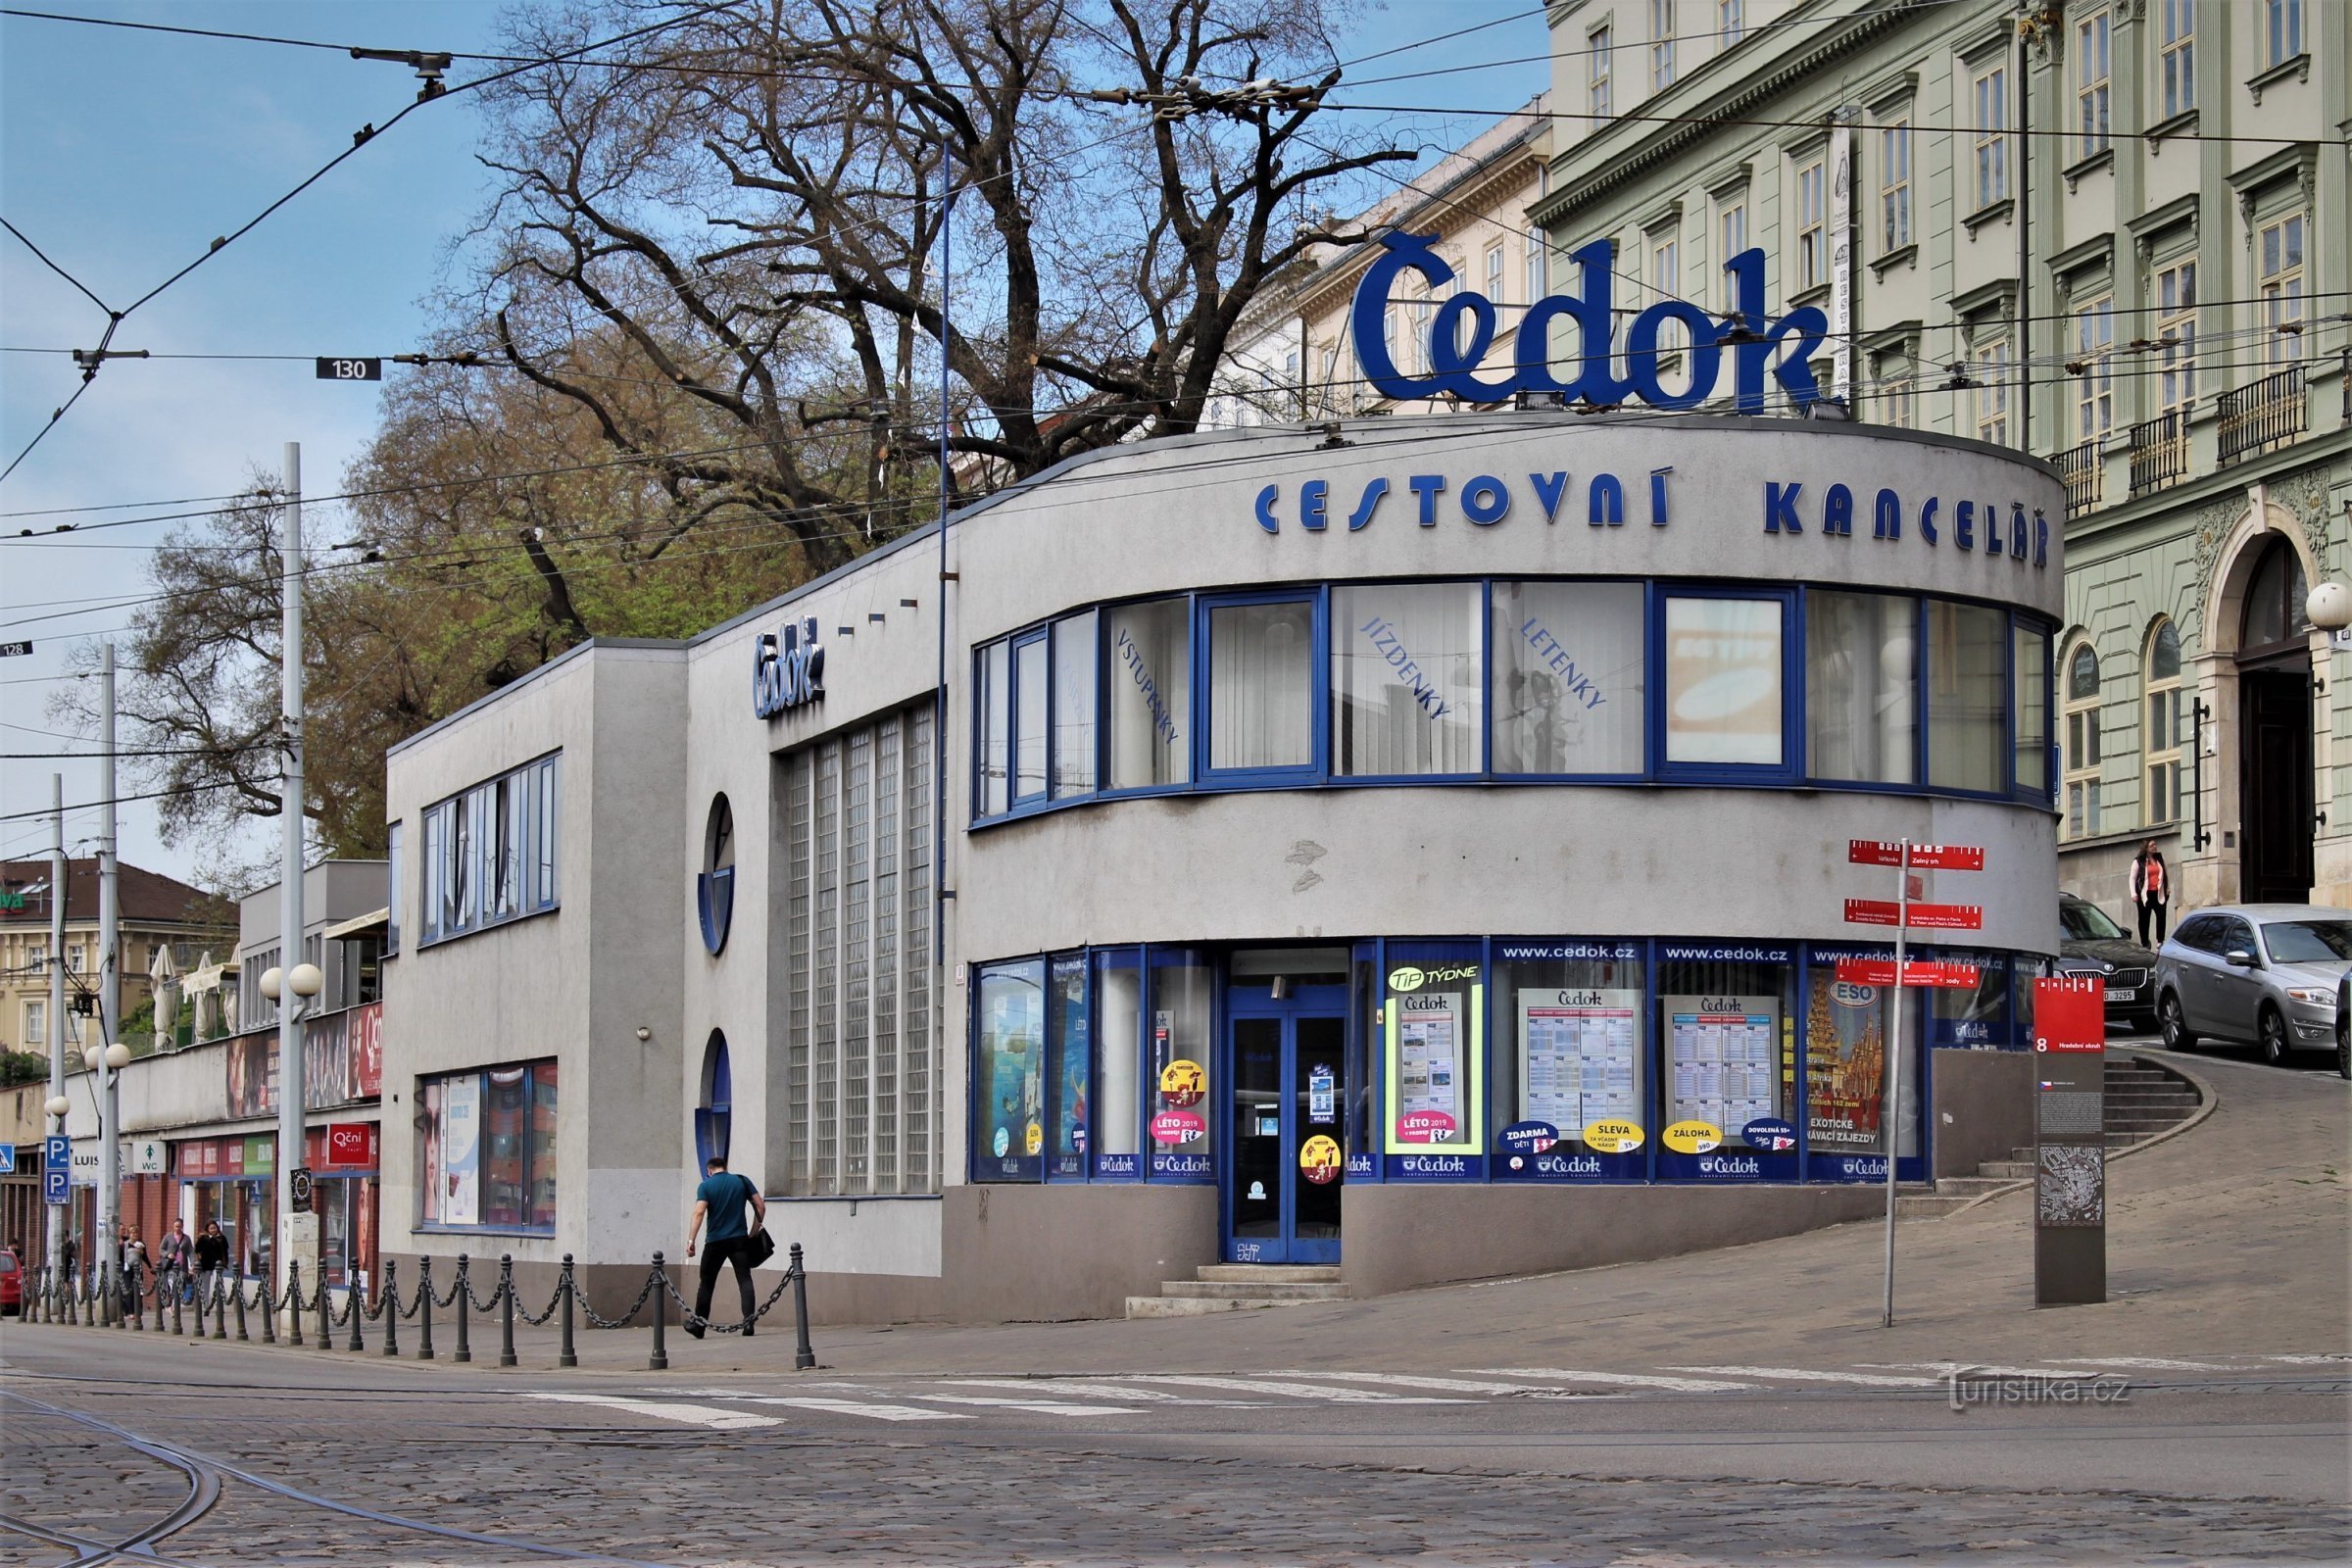 Brno - Čedok building